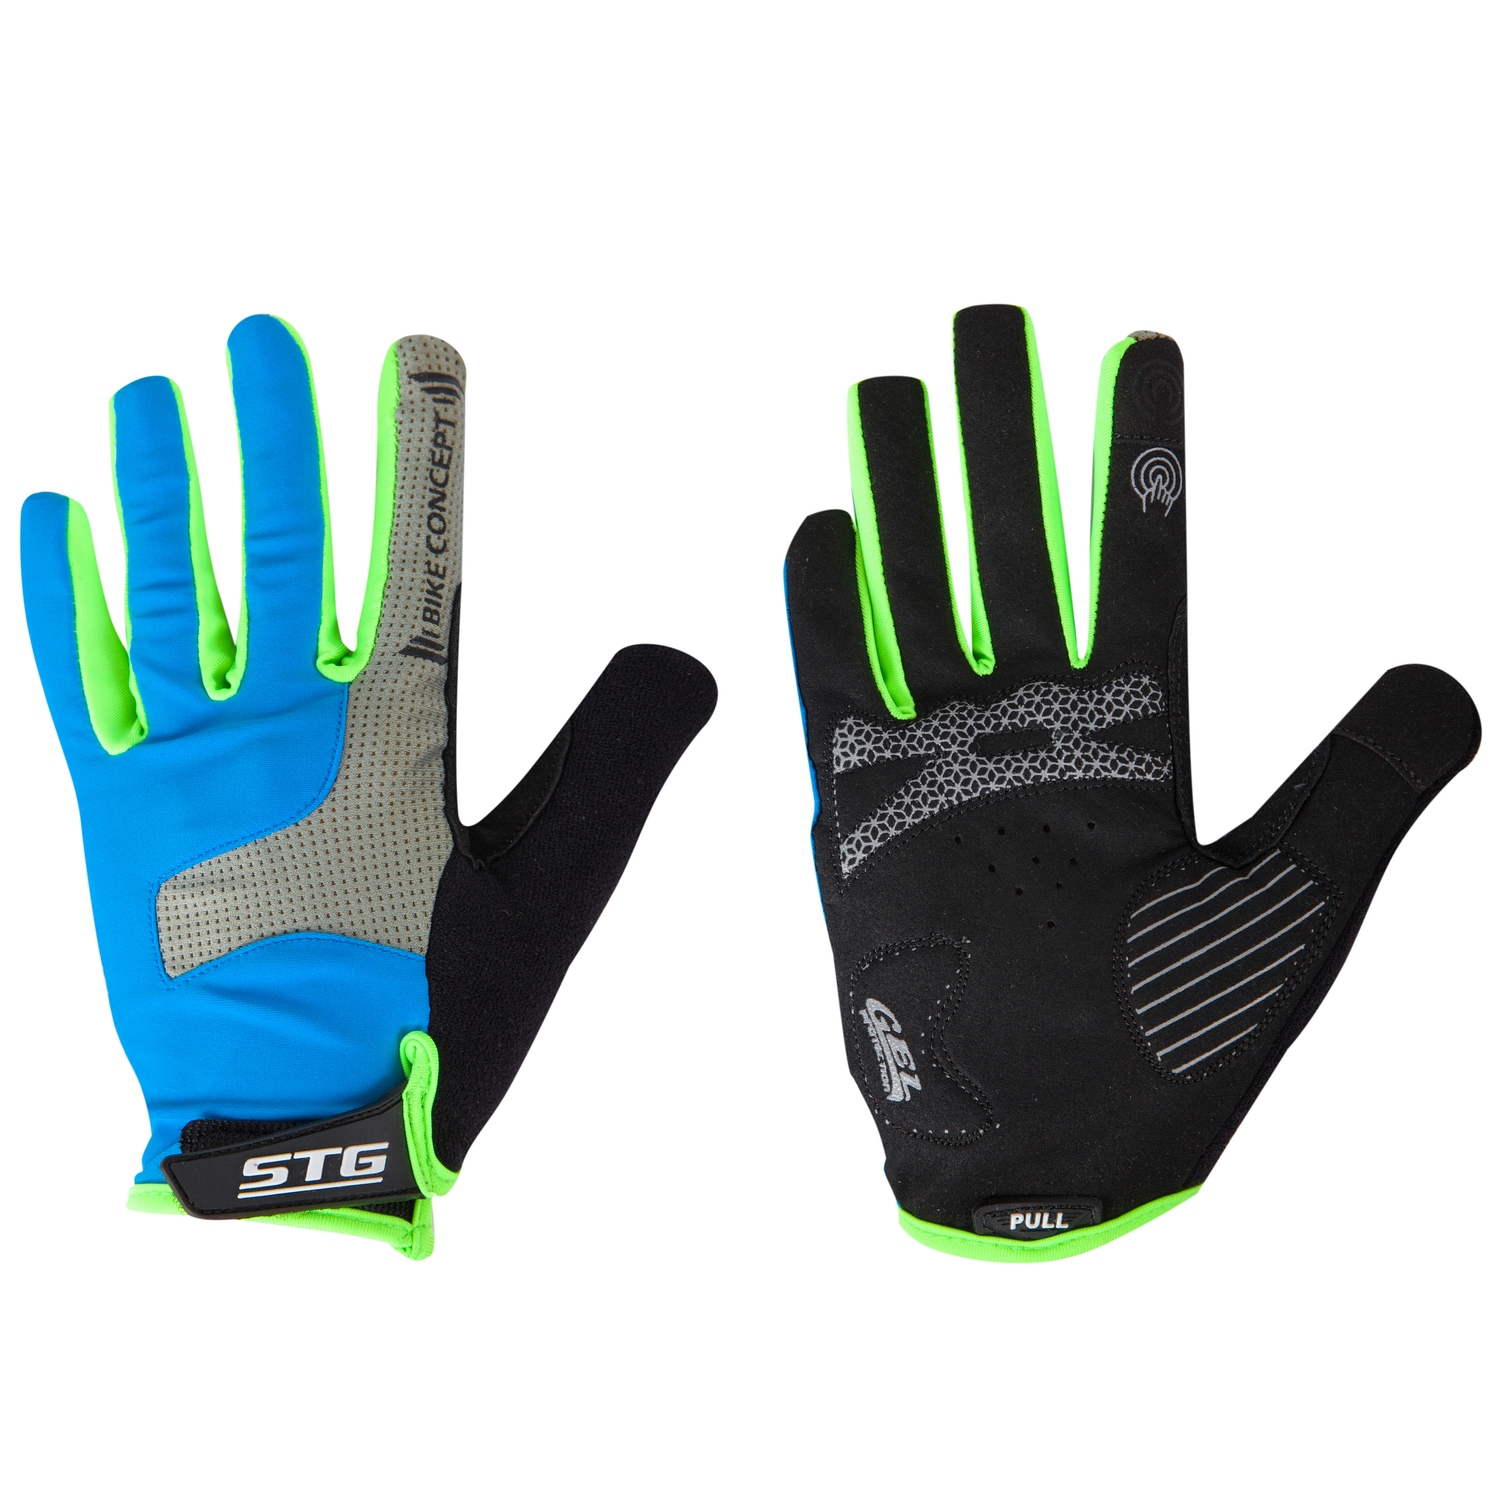 Велоперчатки STG мод.AL-05-1871 синие/серые/черные/зеленые   полноразмерные  XL